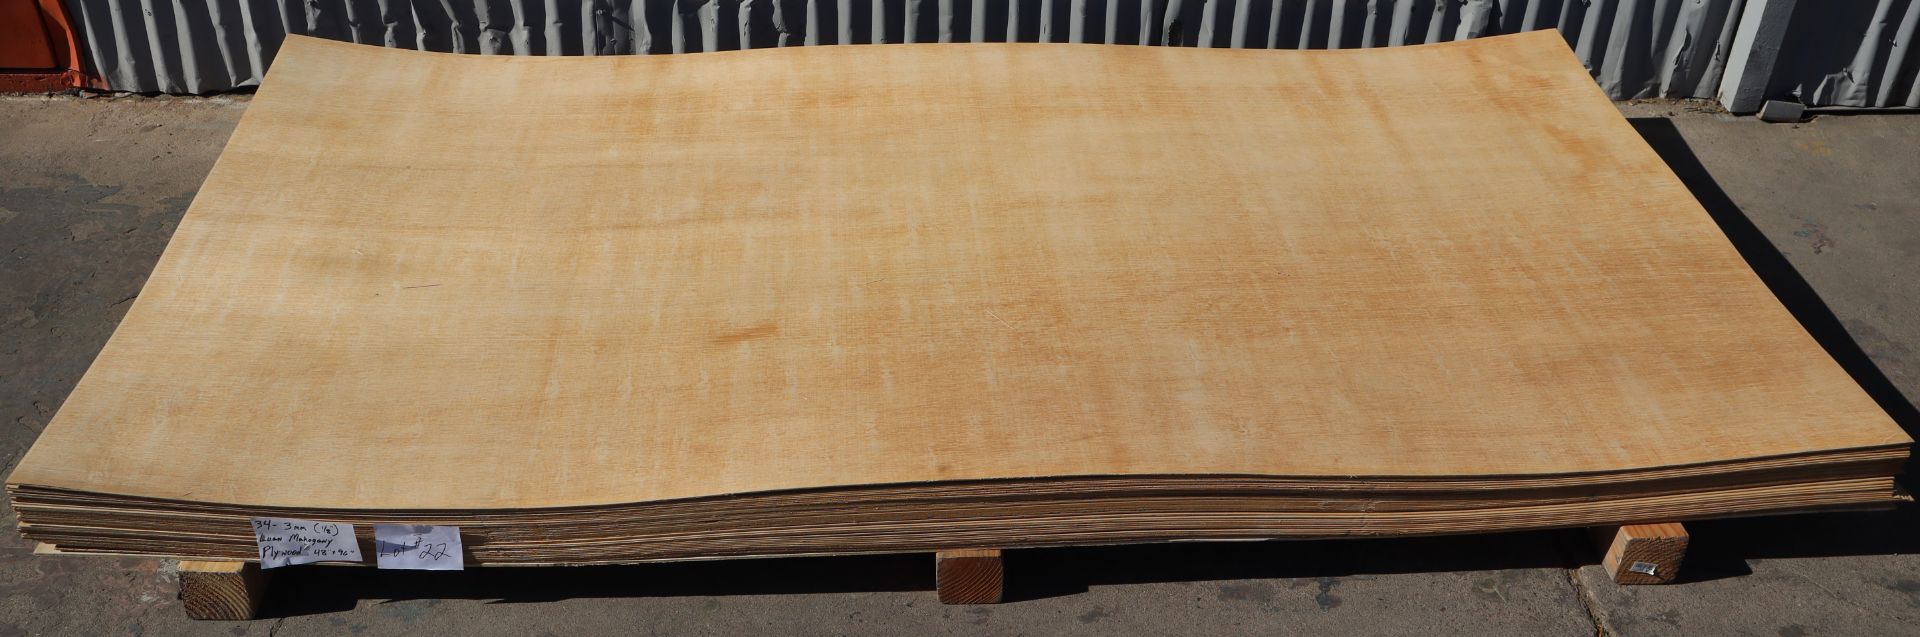 34-Sheets 3mm (1/8") Luan Mahogany Plywood, 48"x96"